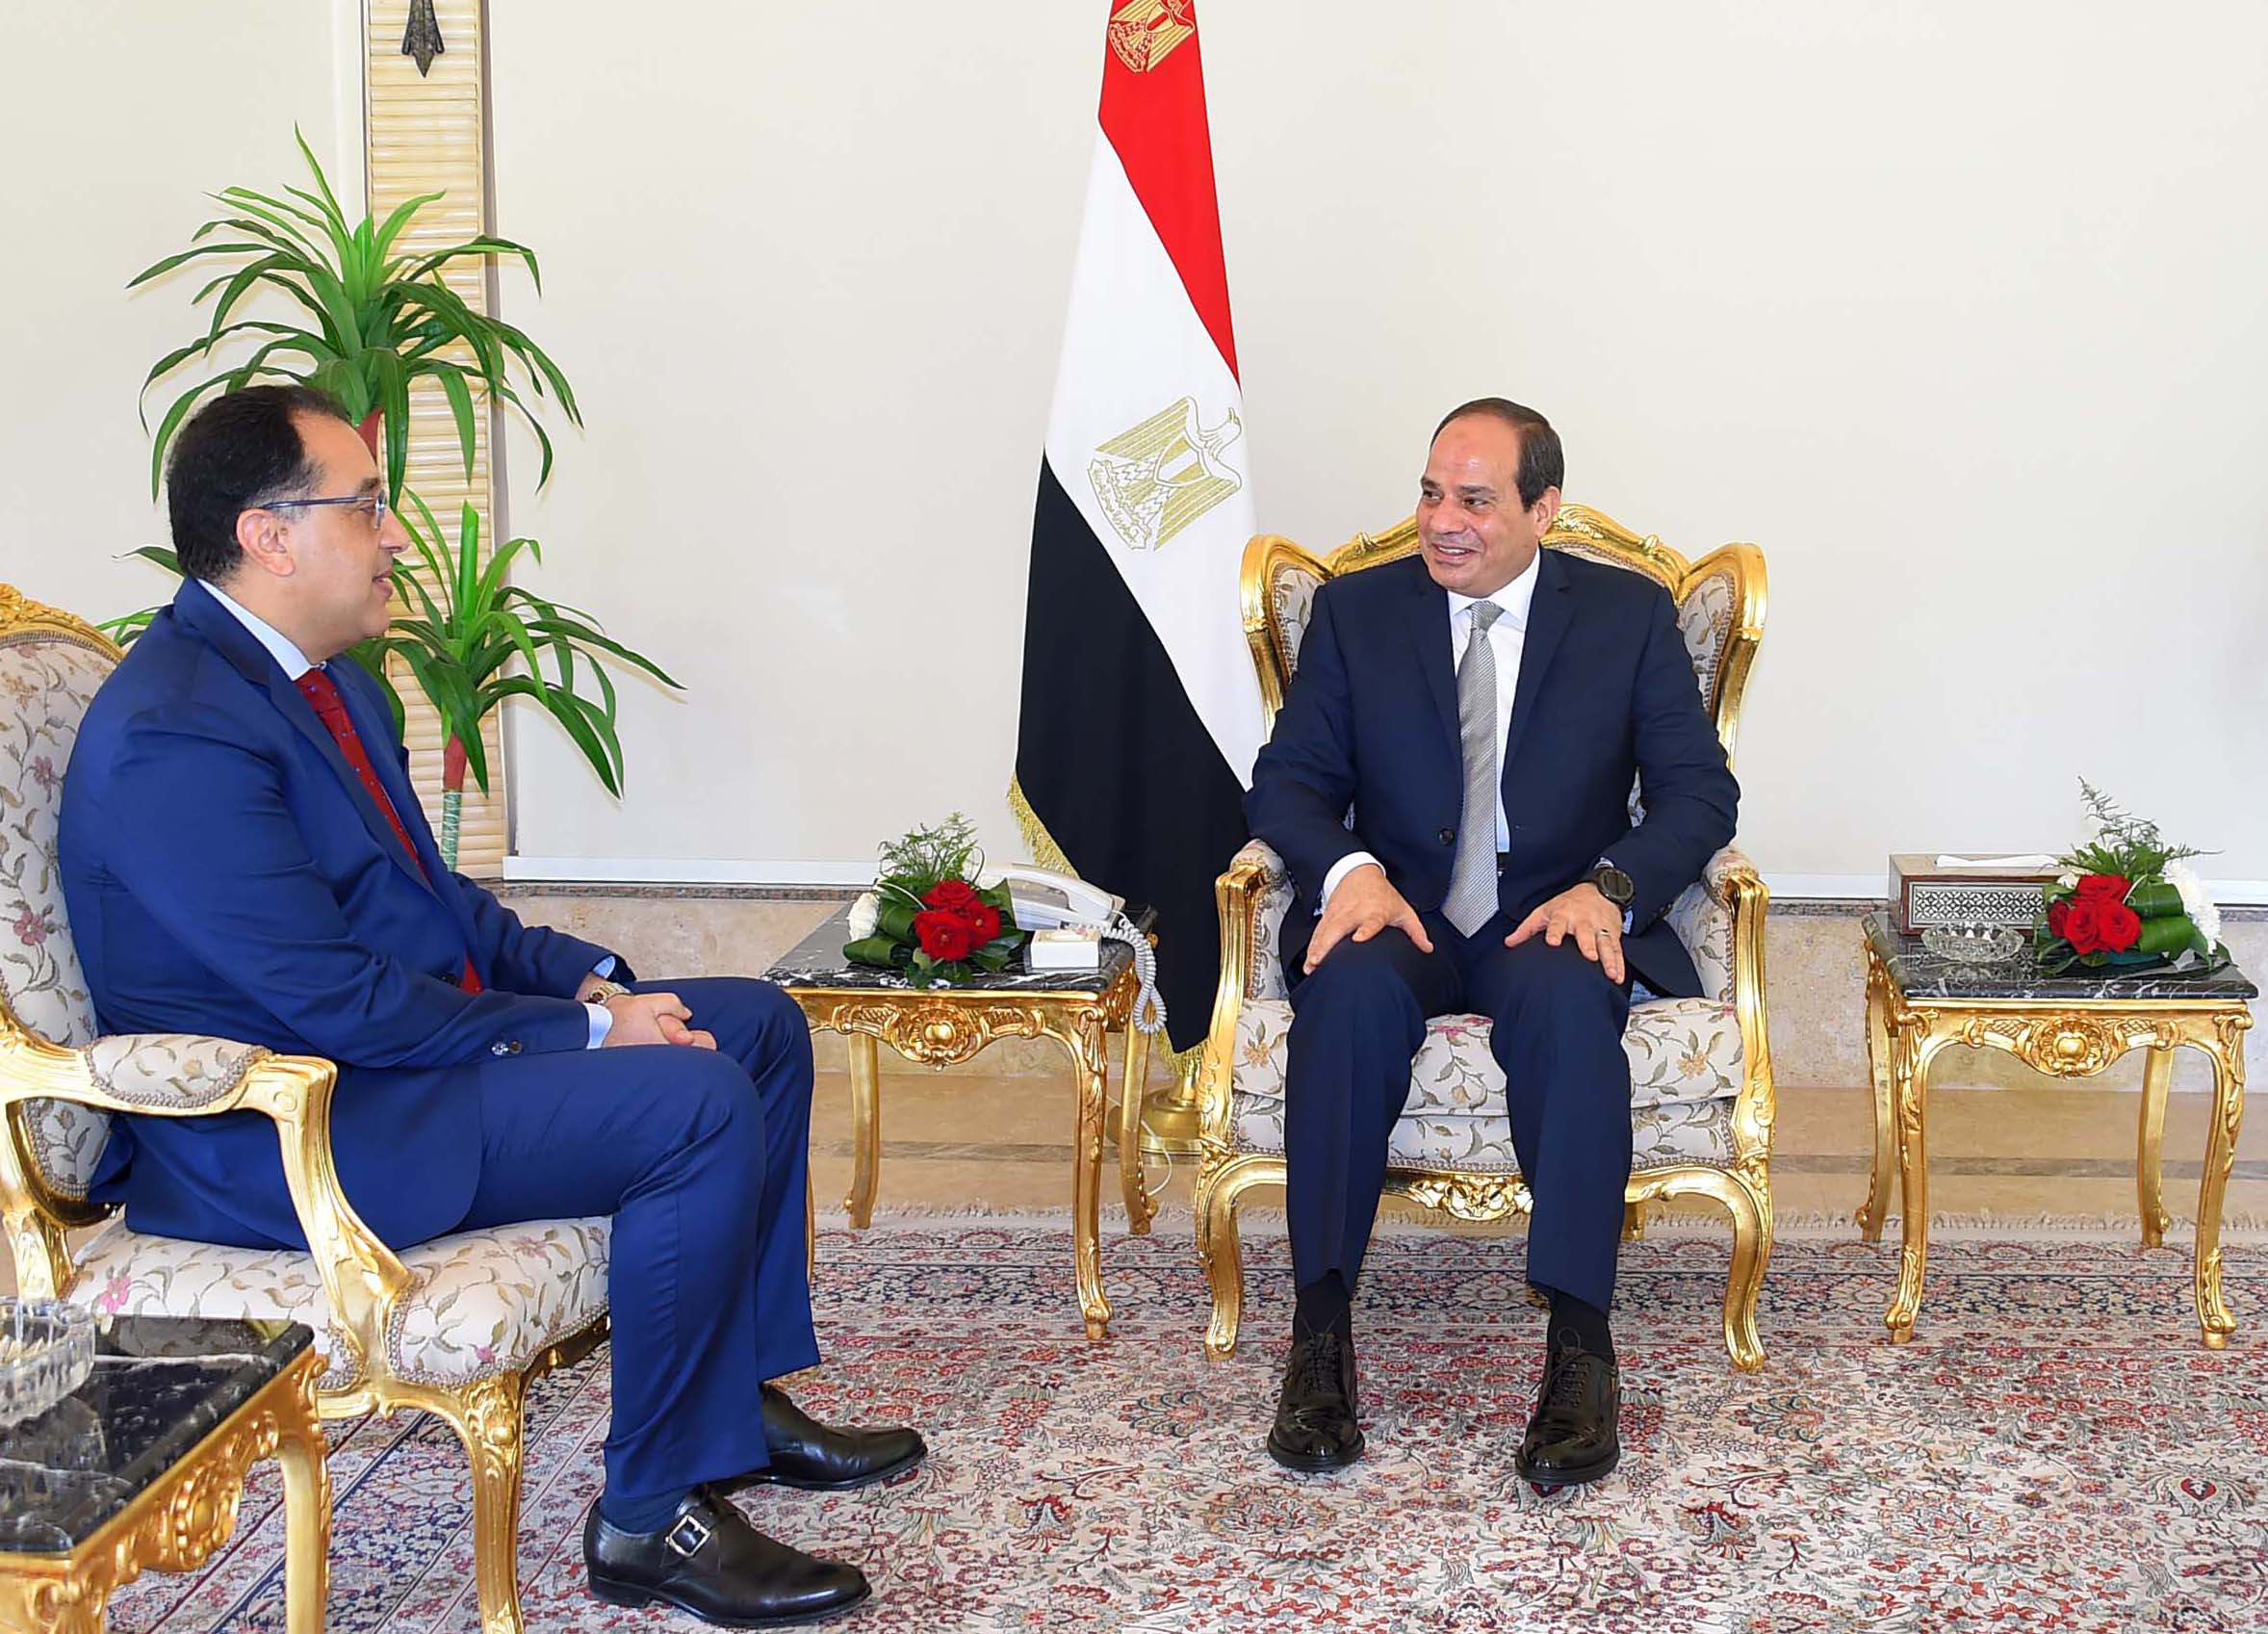   مدبولي يهنئ الرئيس السيسي بذكرى ثورة 23 يوليو: ستظل حاضرة في وجدان الشعب المصري